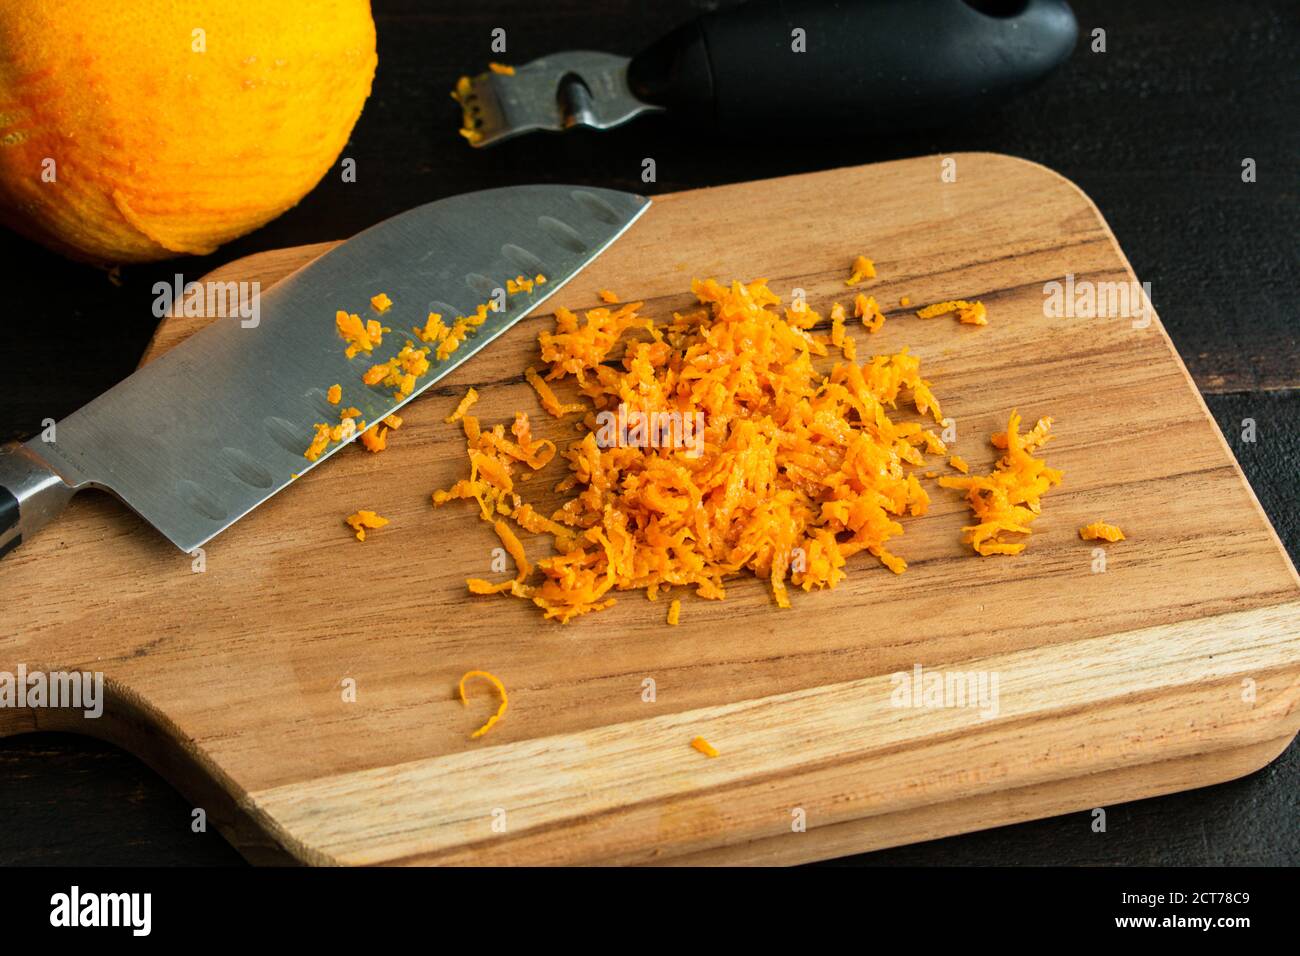 Zesting un arancione: Scorza arancione su un tagliere di legno Foto Stock